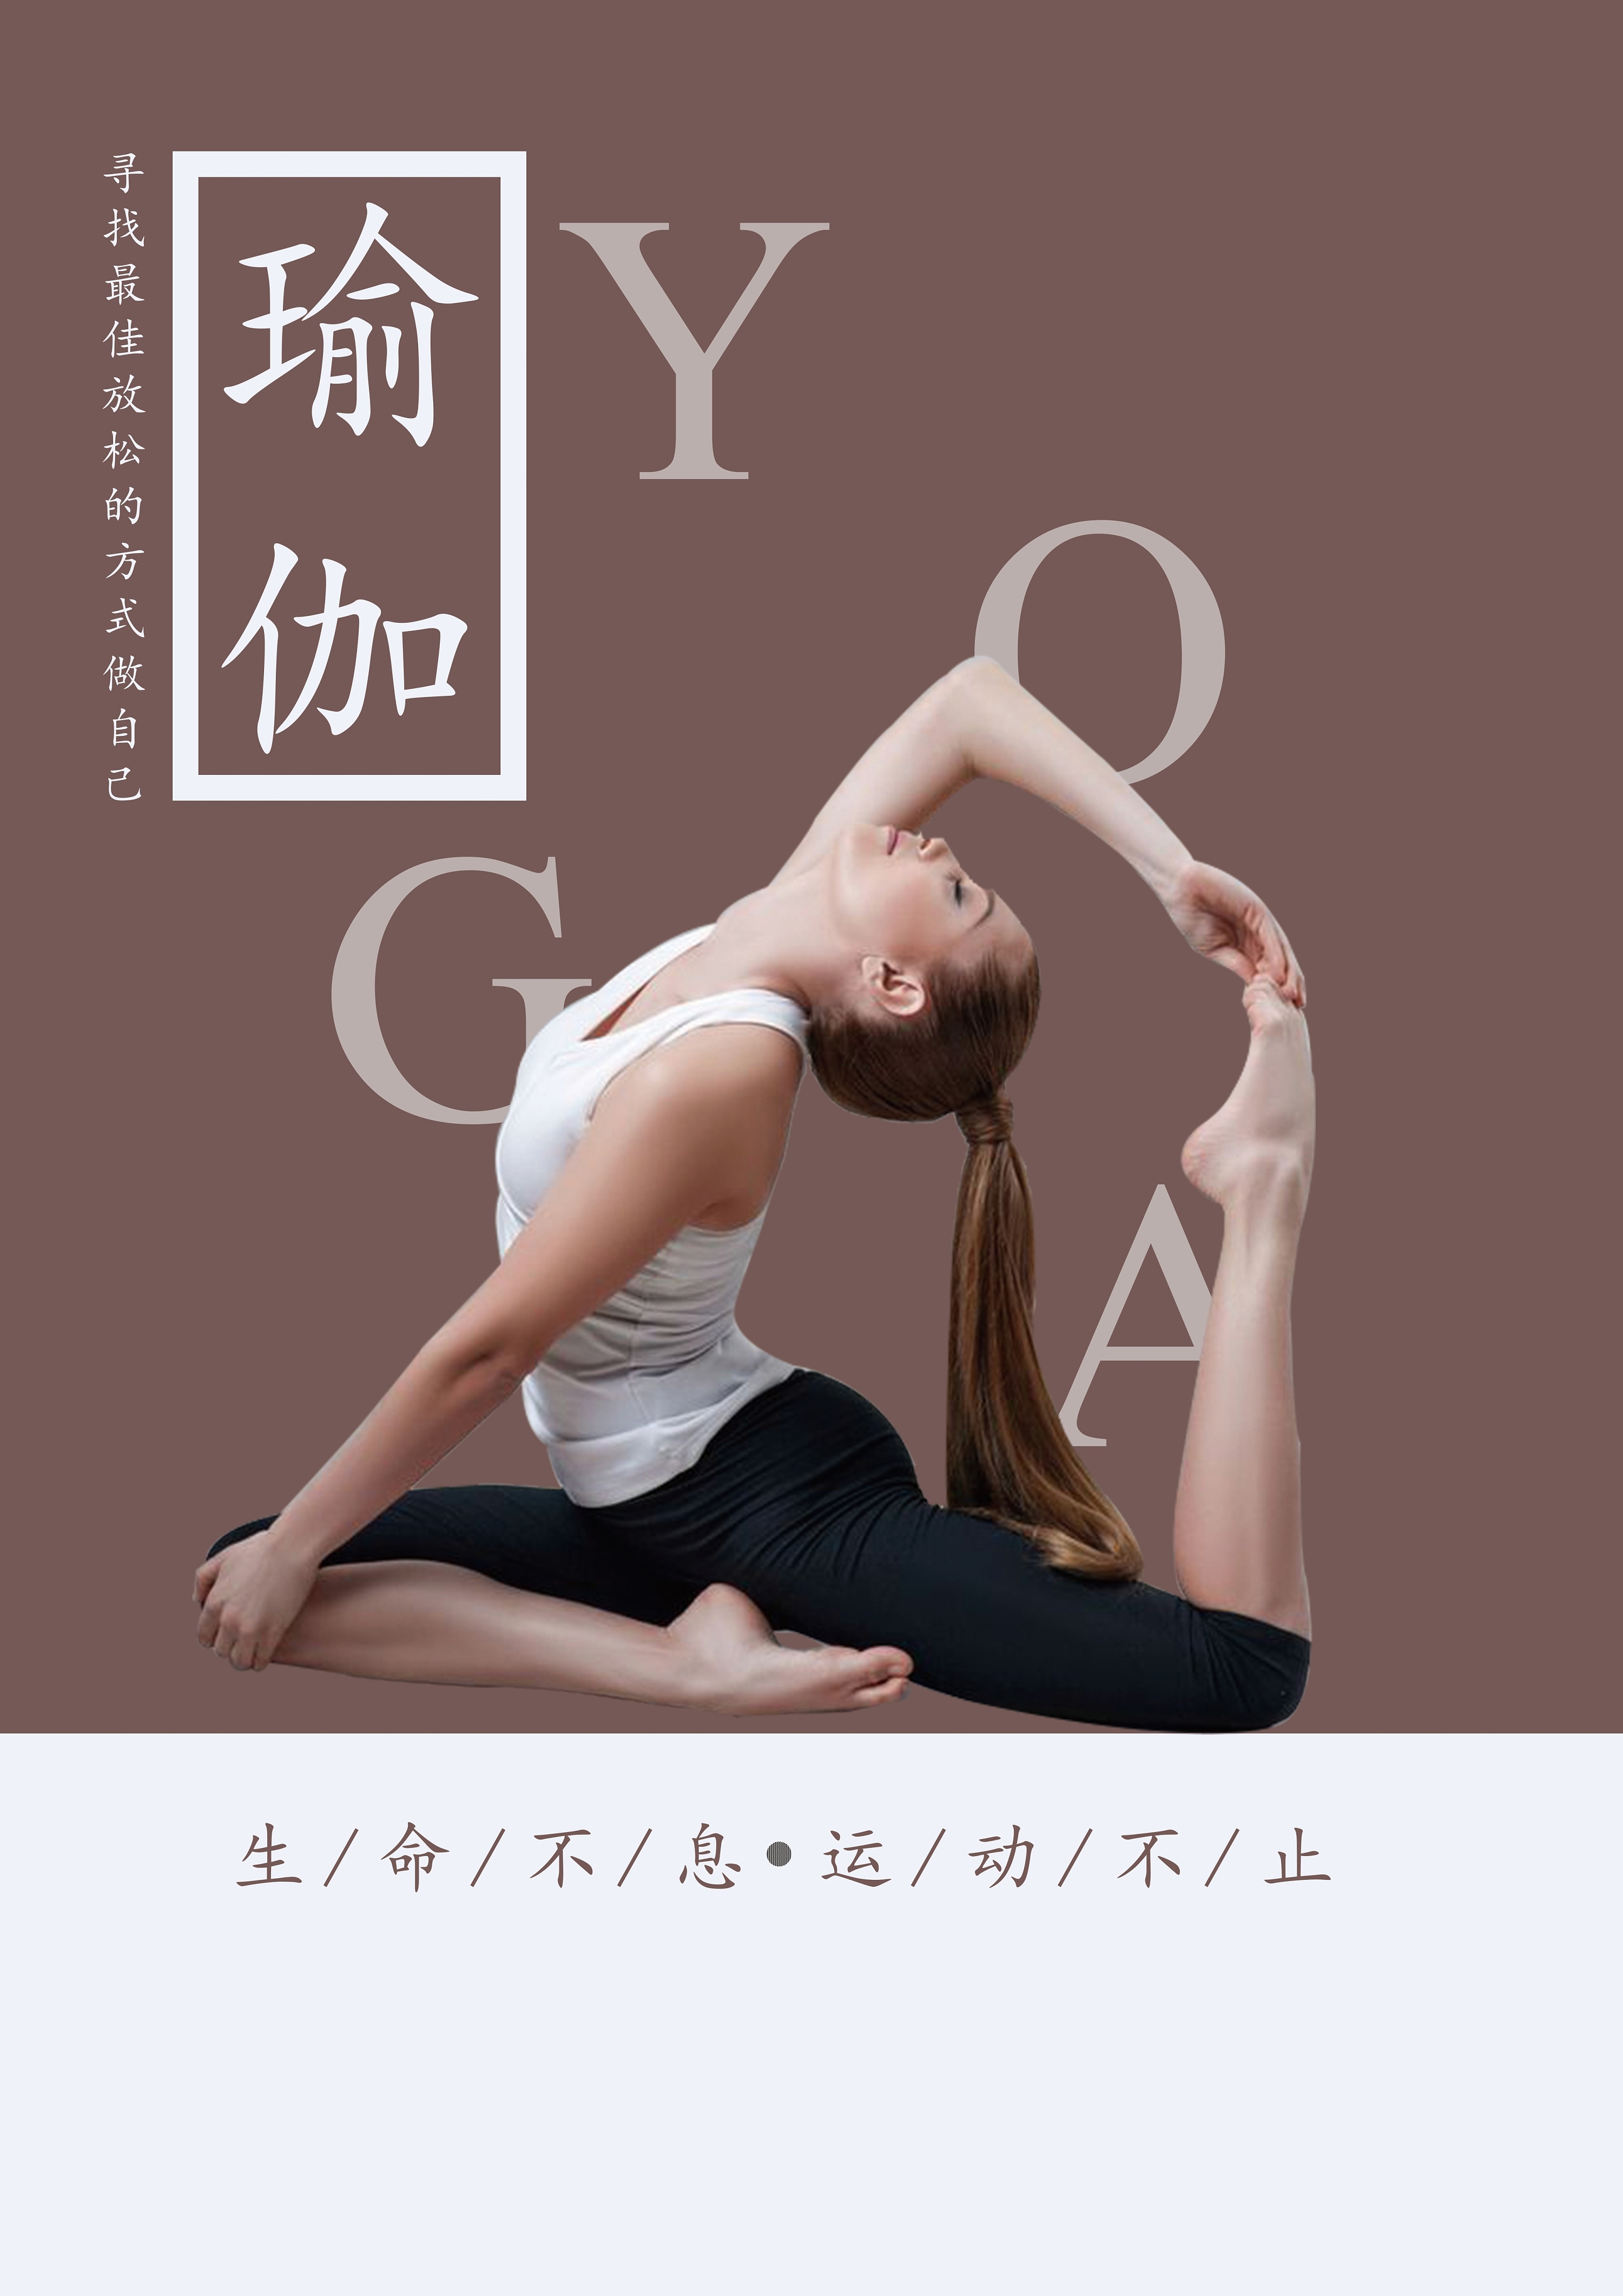 瑜伽宣传文案创意图片